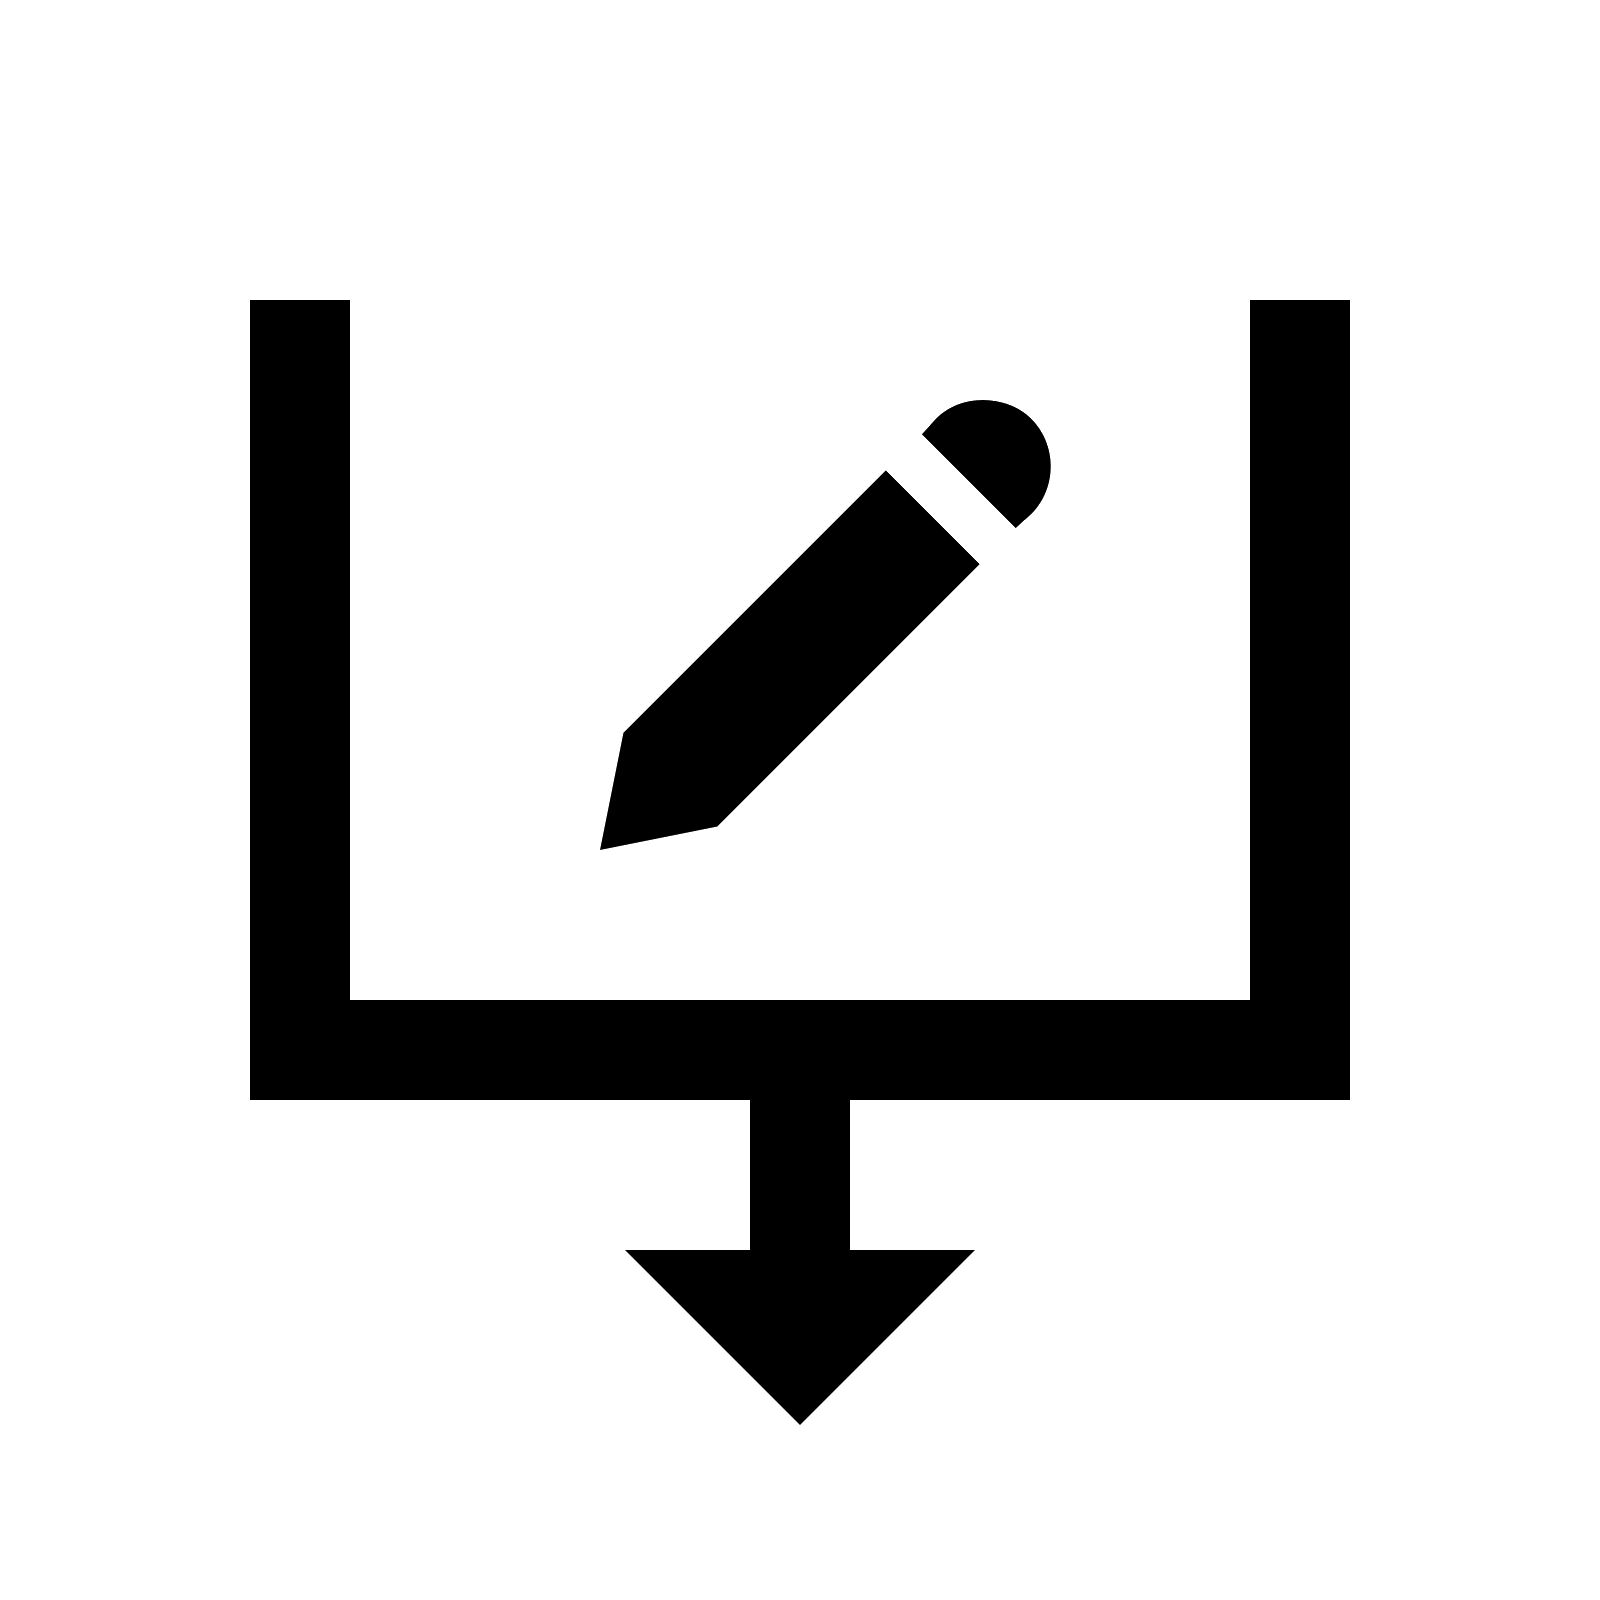 Altered Black Logo Vector PNG - 110031